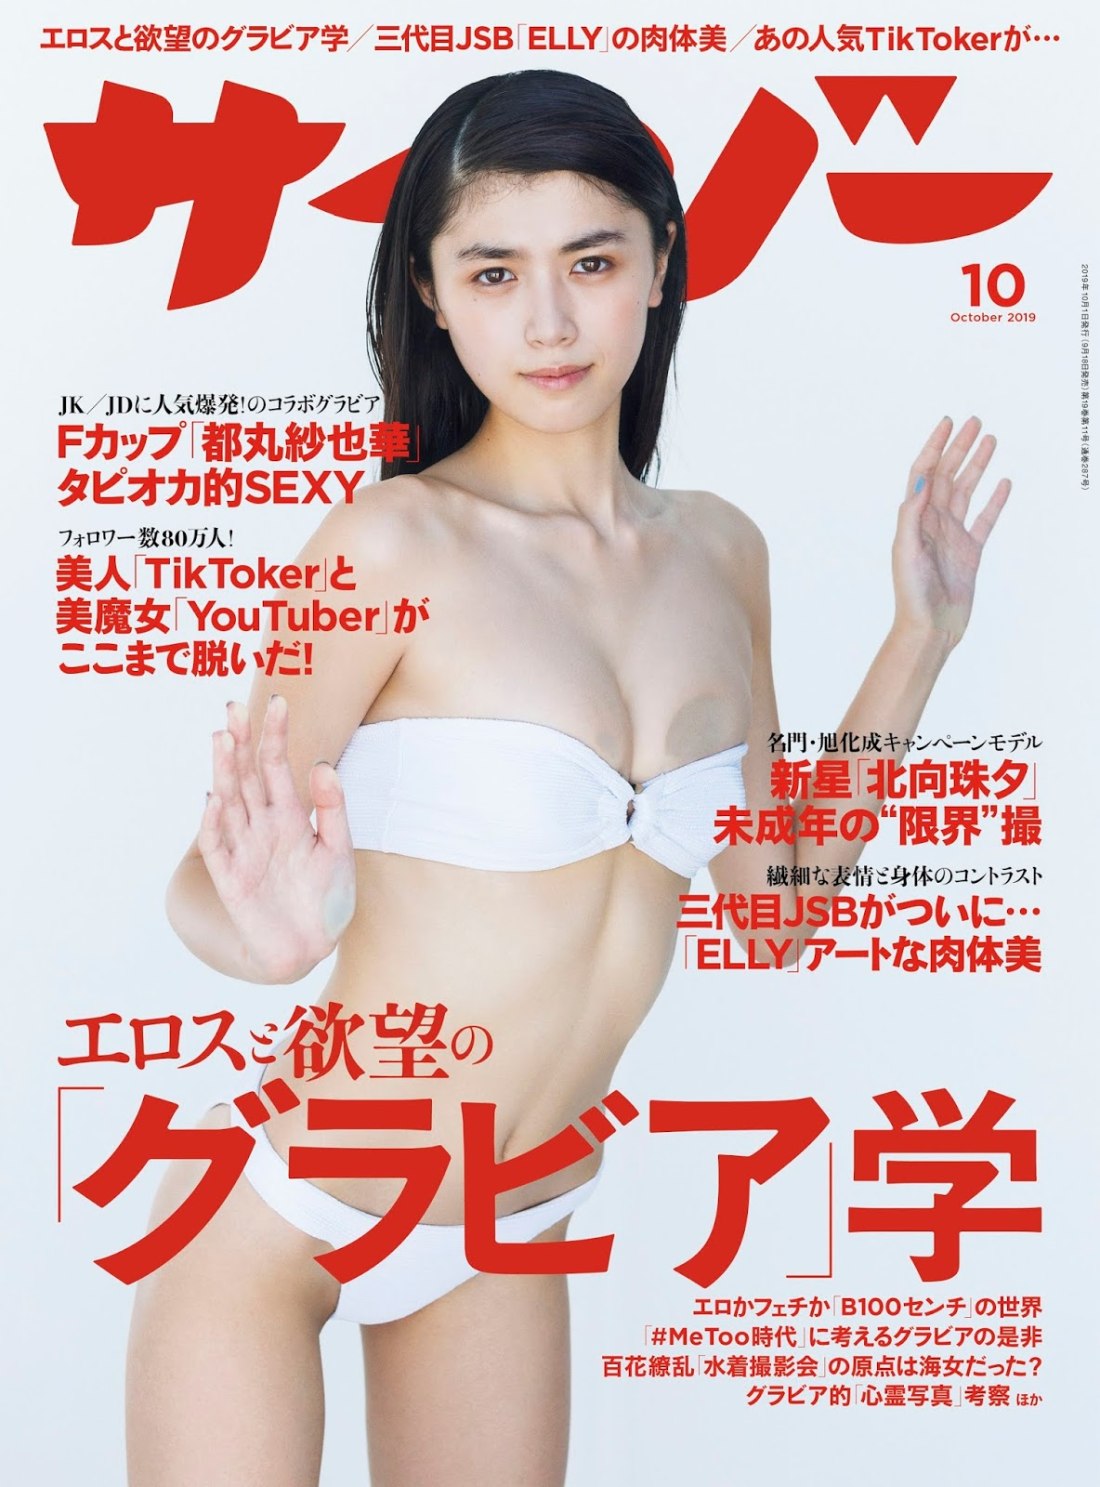 Порно журналы японии фото 42